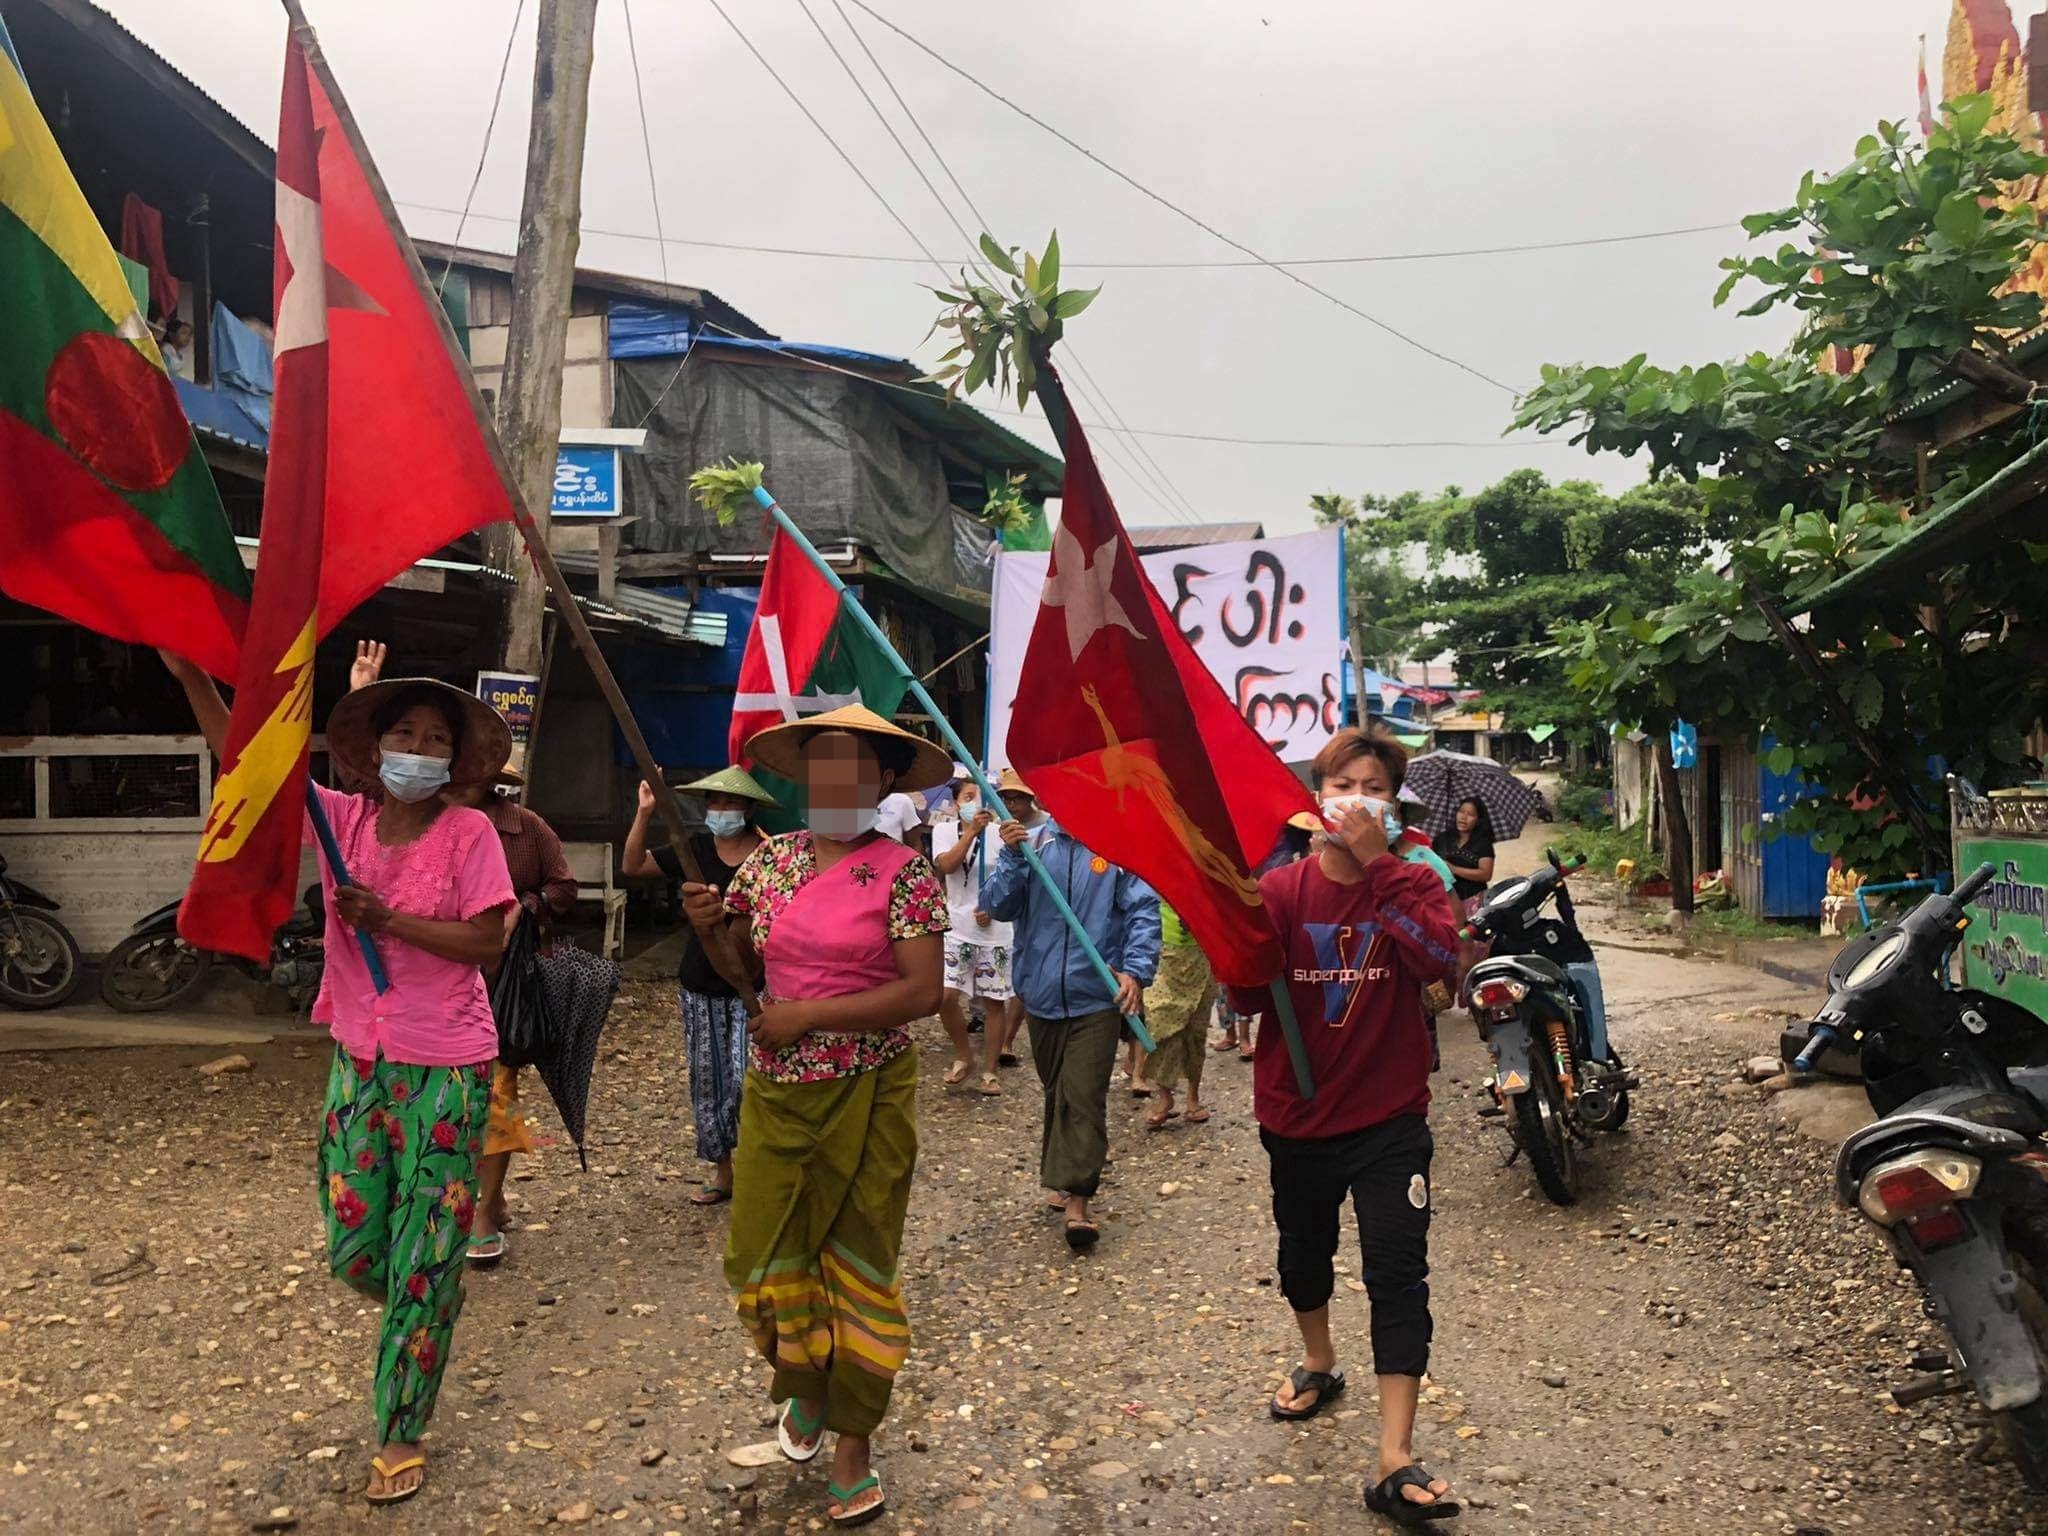 ဖားကန့်မြို့နယ်၊ ဟောင်ပါးကျေးရွာအုပ်စု၏ စစ်အာဏာရှင်စနစ် ဆန့်ကျင်ရေး သပိတ်